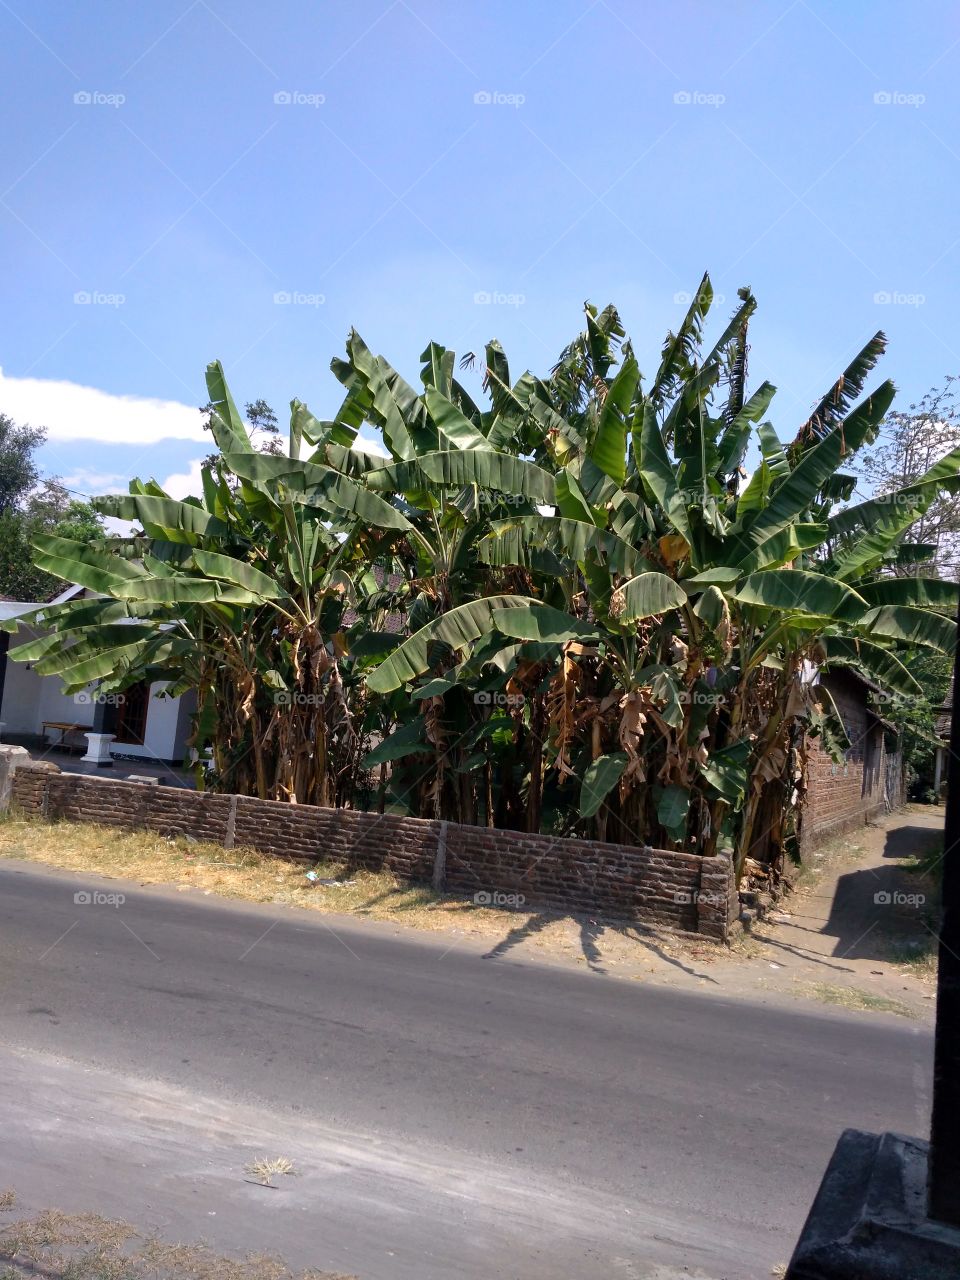 Banana trees in the dry season